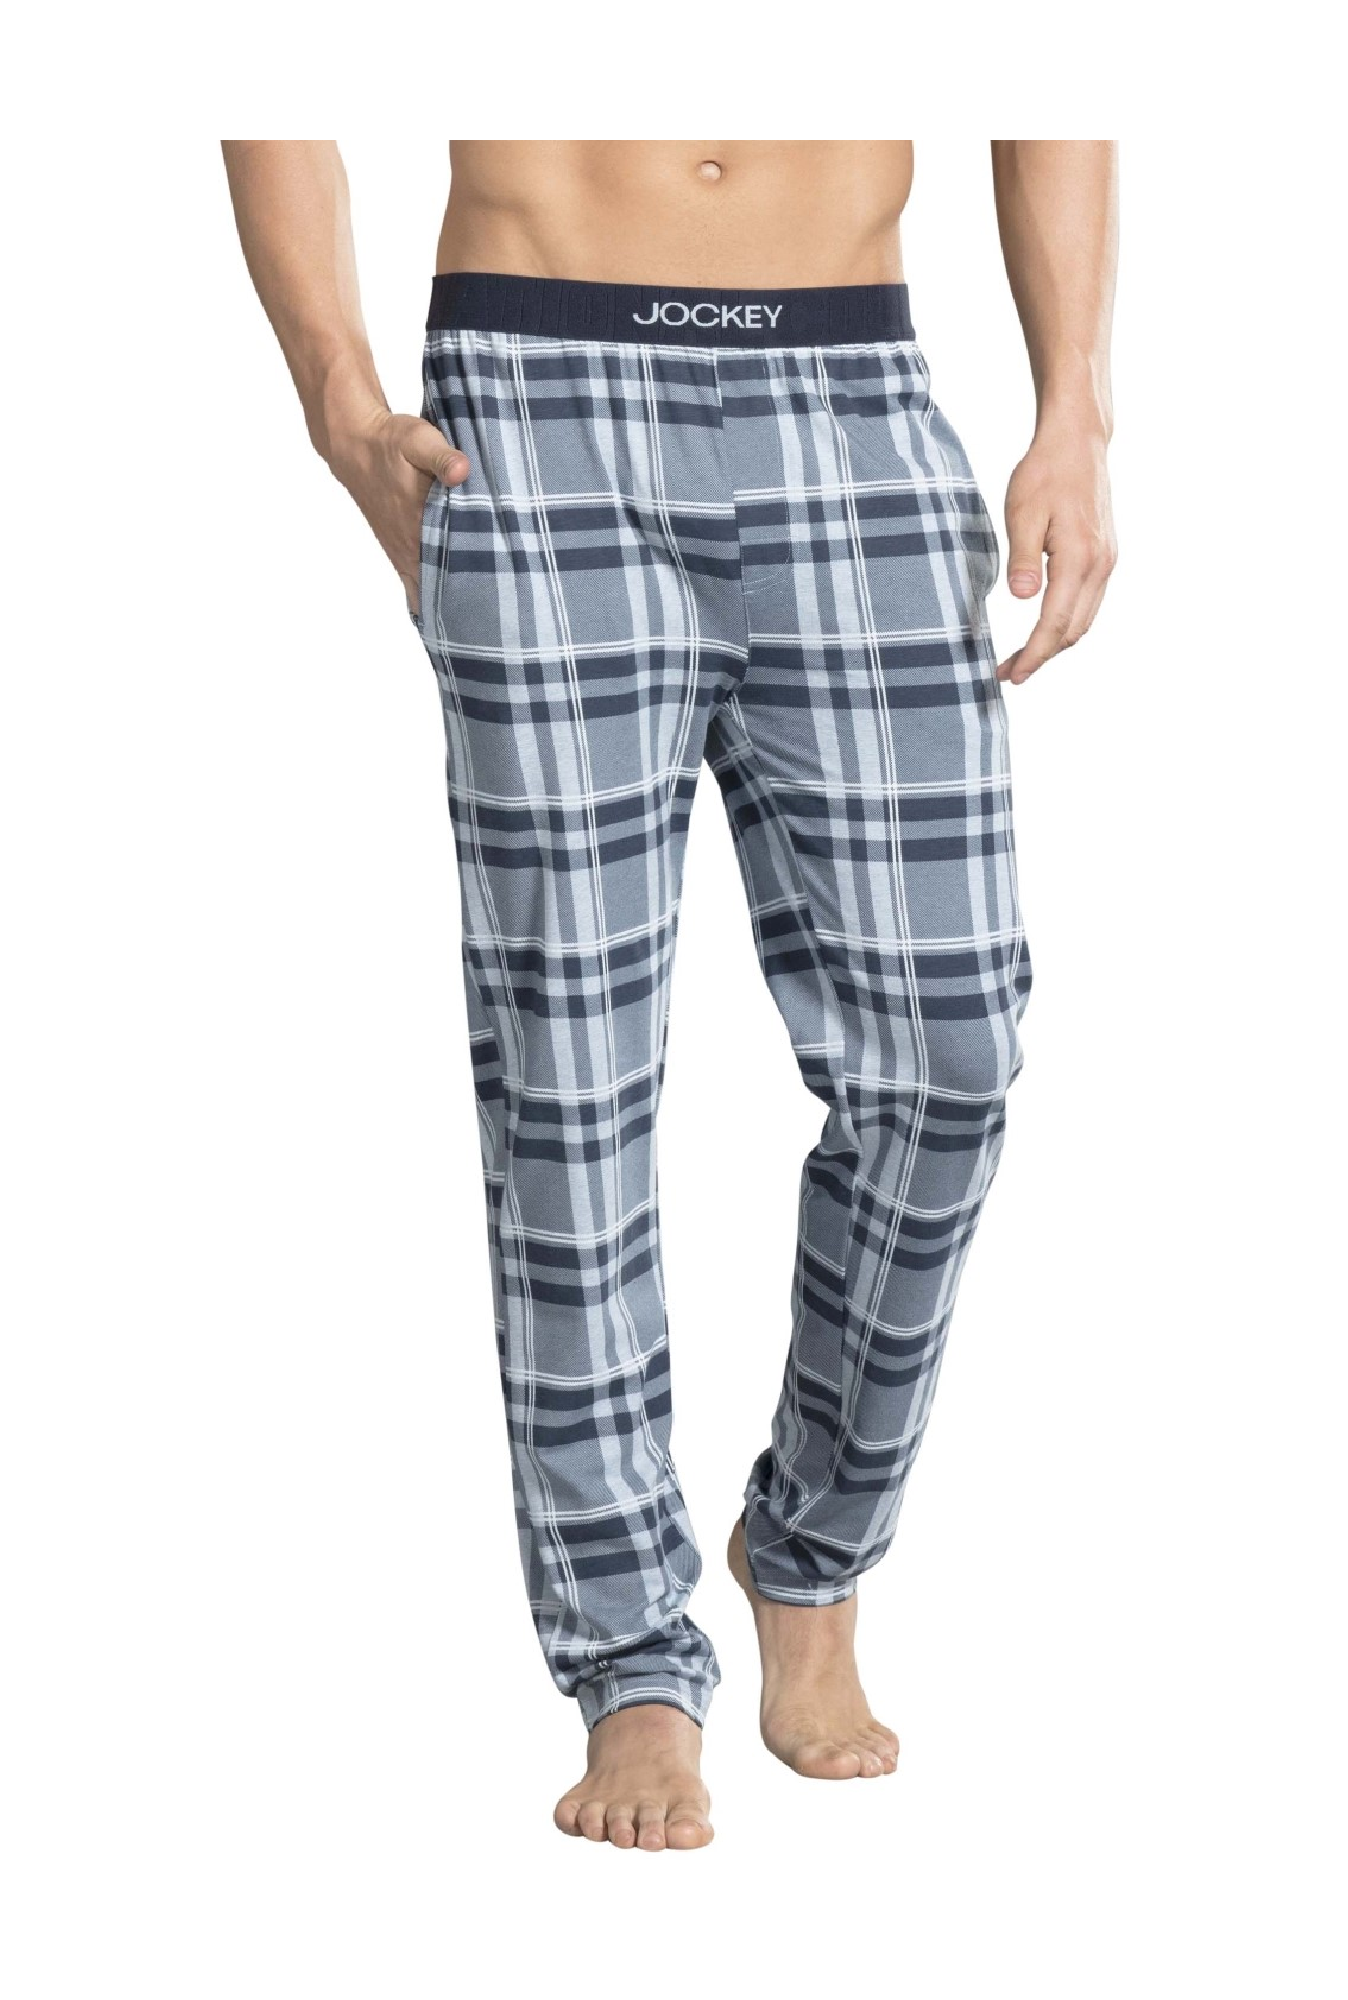 JOCKEY Men Pyjama  Buy JOCKEY Men Pyjama Online at Best Prices in India   Flipkartcom